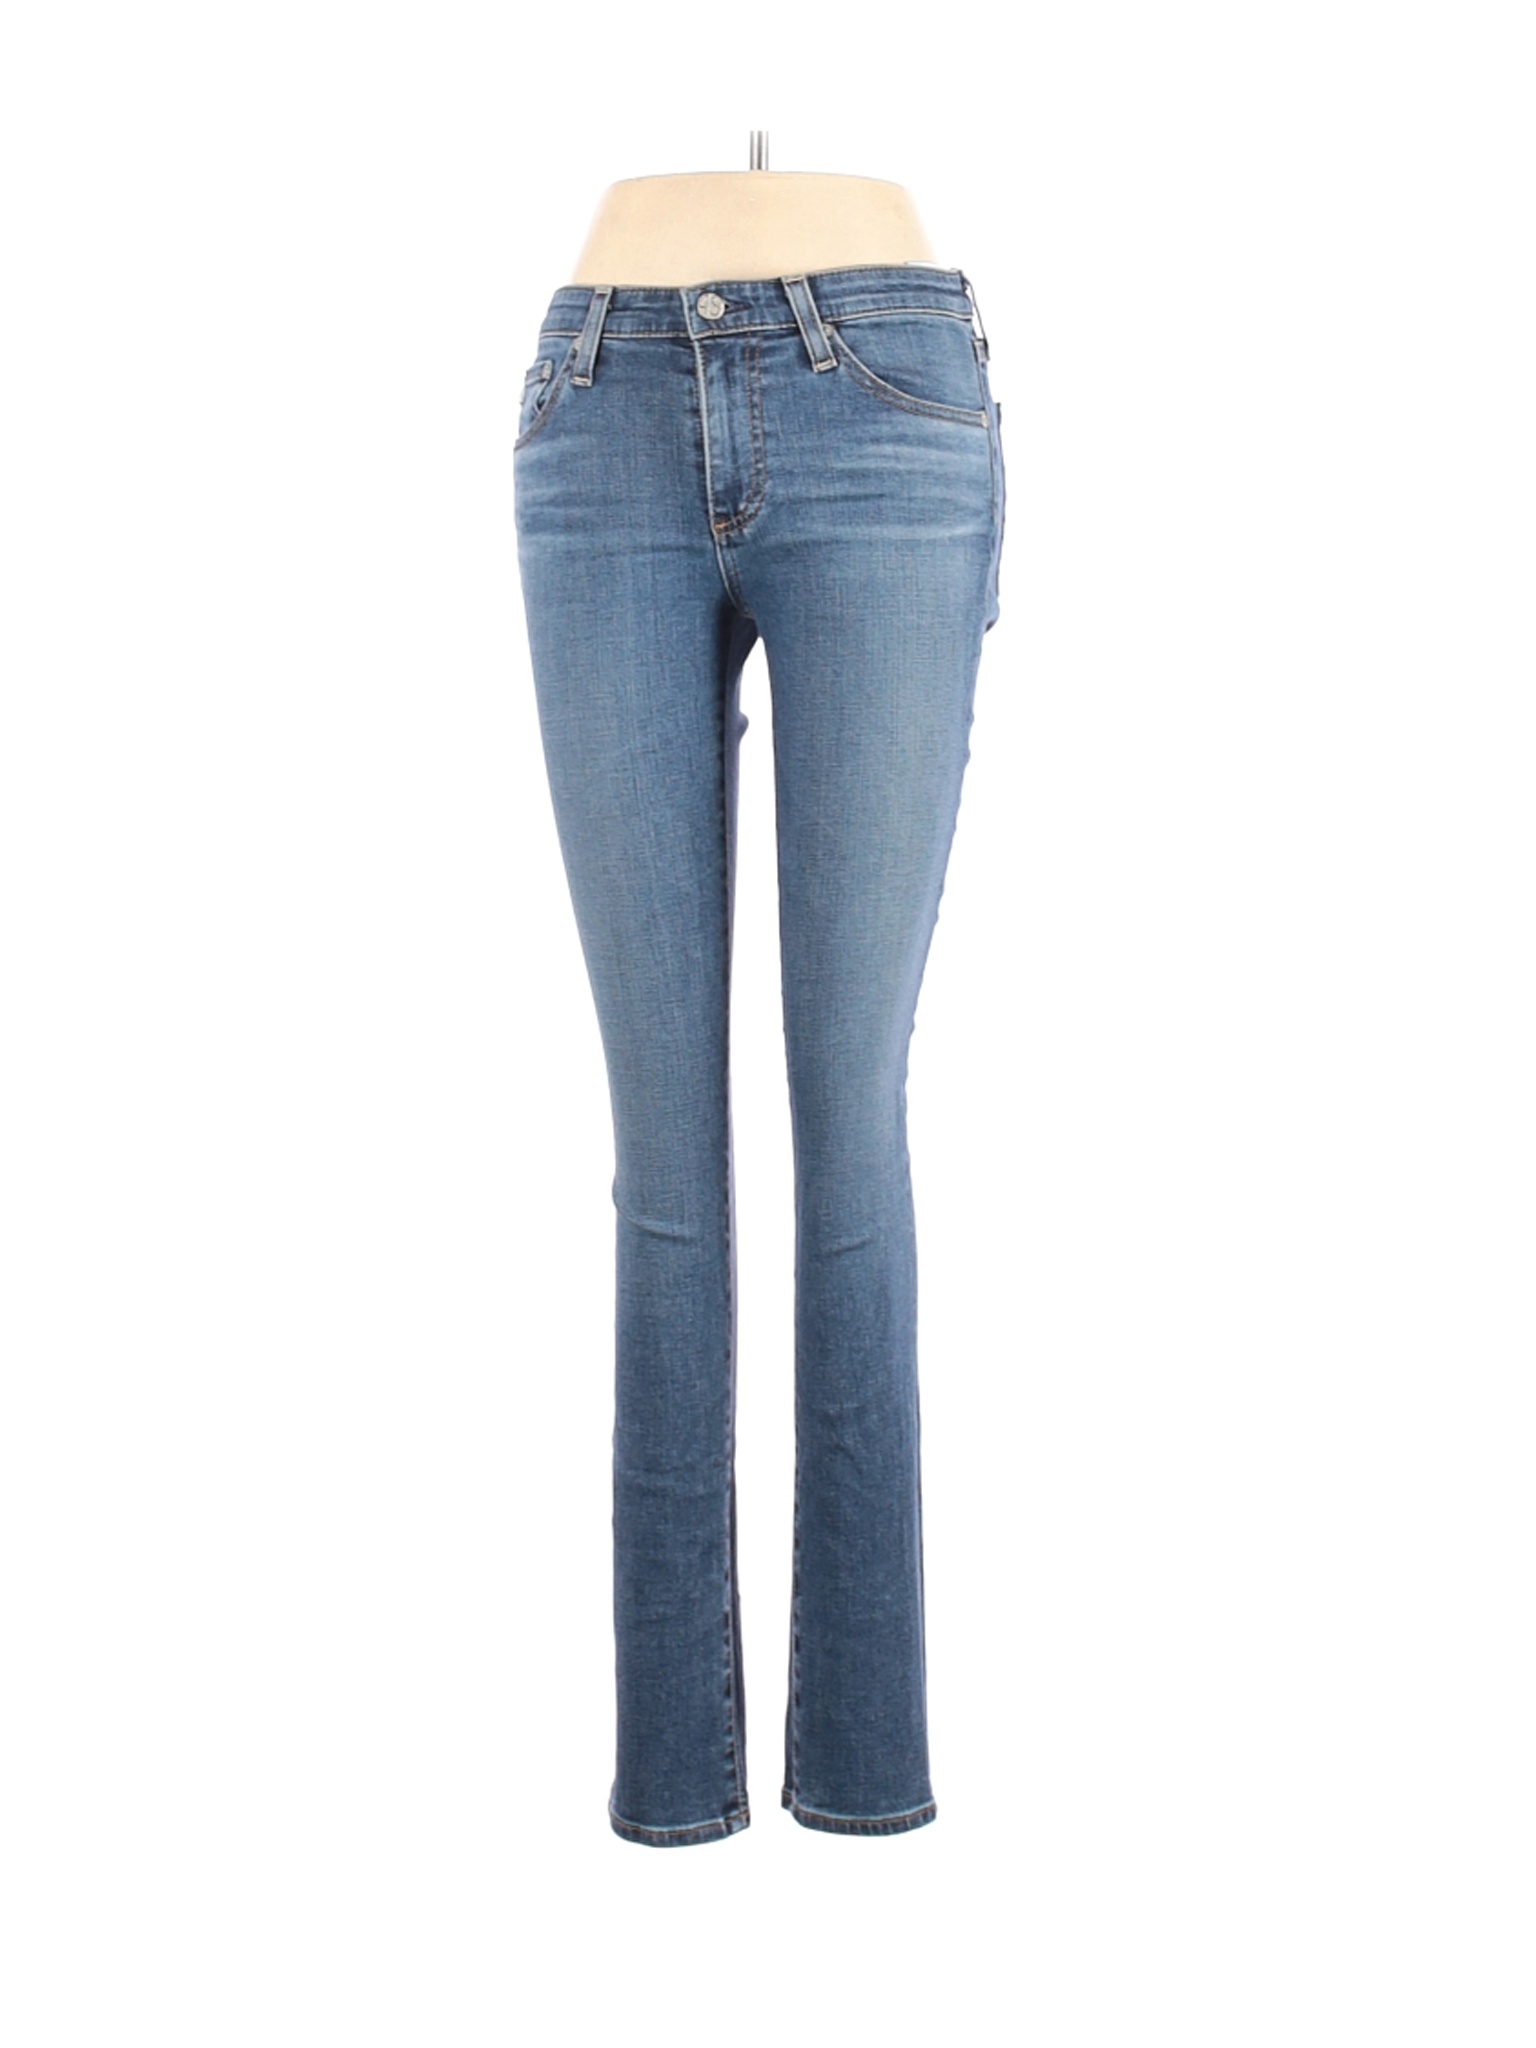 adriano goldschmied women's jeans